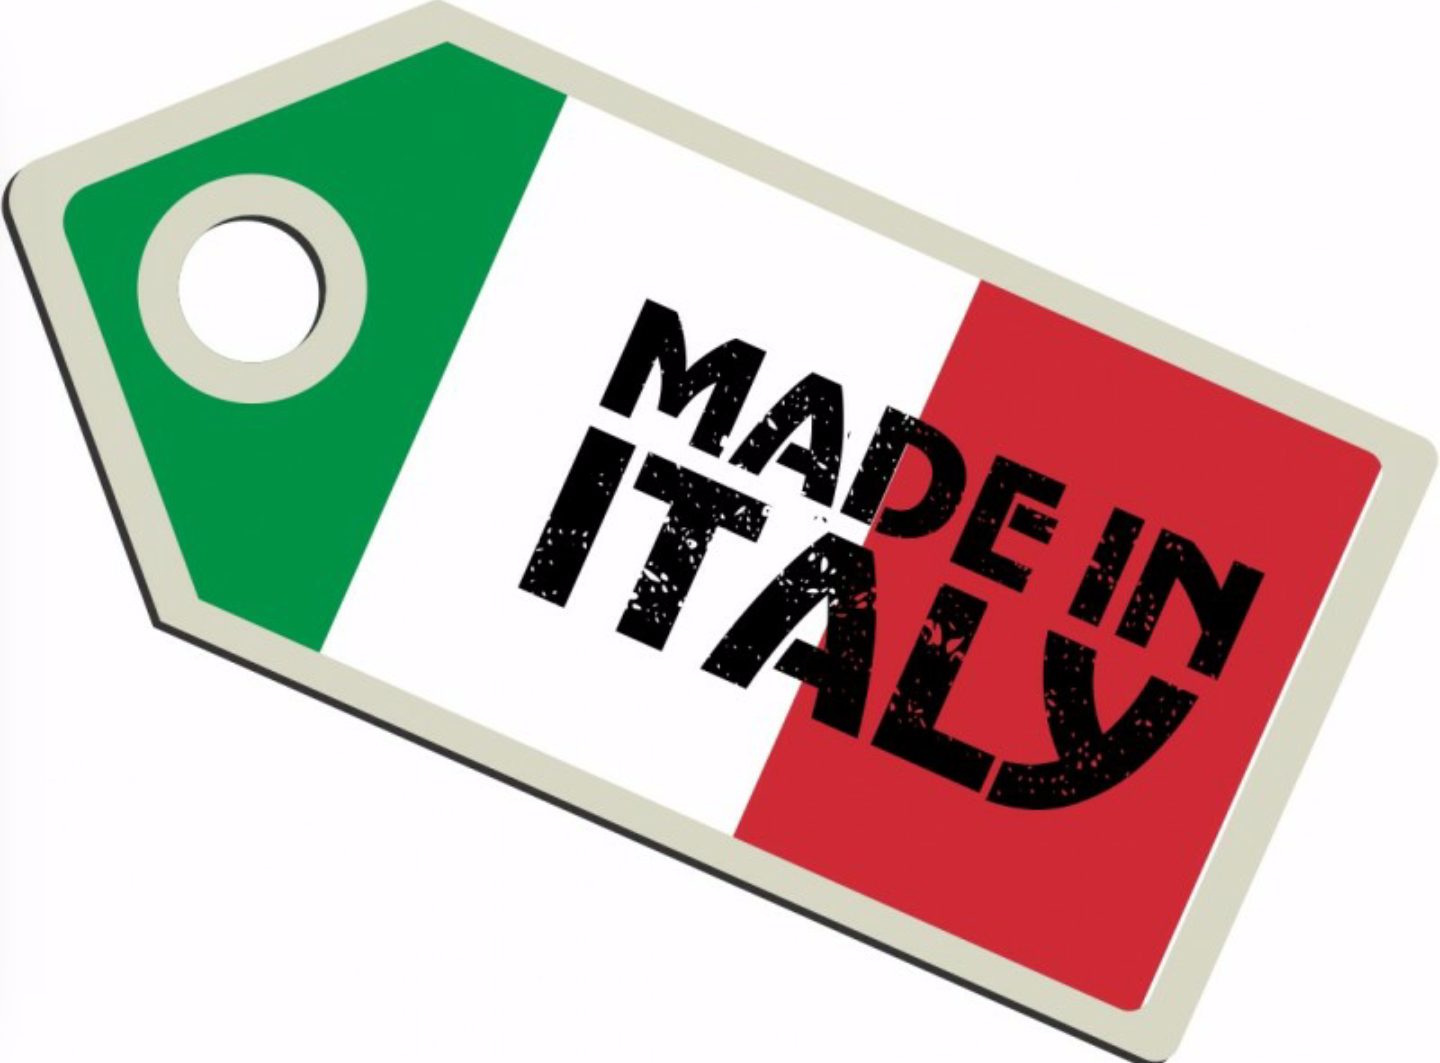 Marchio Made in Italy, solo il 35% delle imprese medio-grandi lo